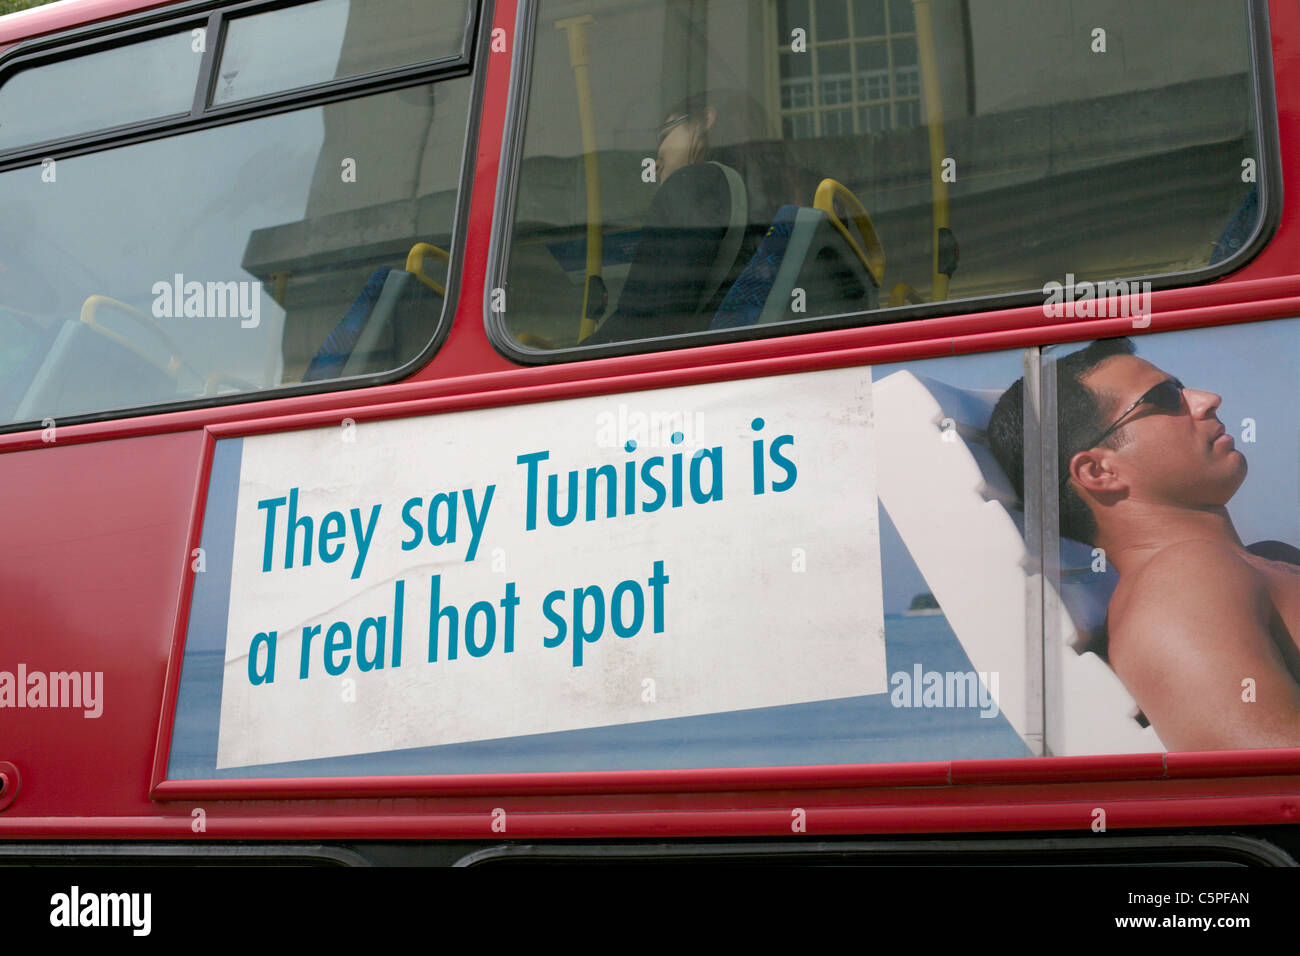 Luglio 2011 London bus rosso con segno pubblicità dicono che la Tunisia è un vero e proprio hot spot Foto Stock